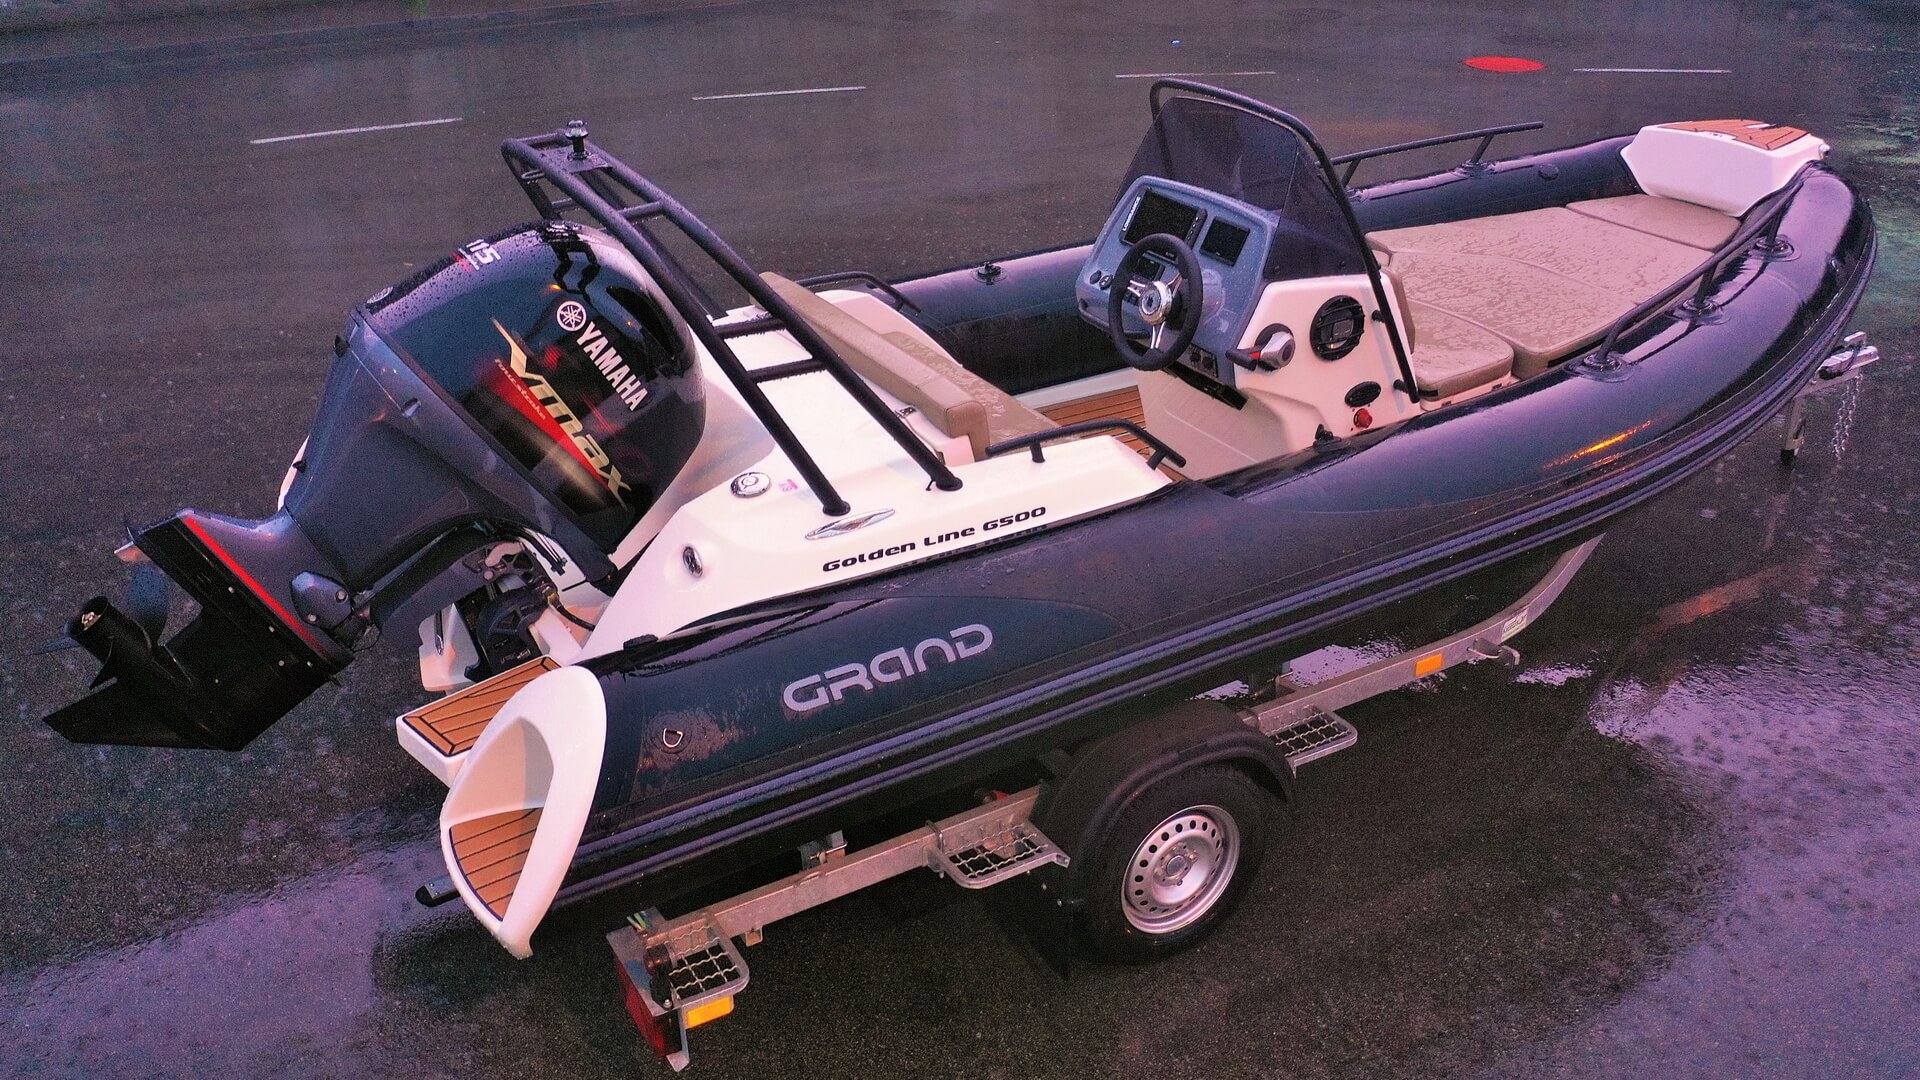 Надувная лодка с жестким дном GRAND Golden Line G500LF, Надувная лодка GRAND Golden Line G500LF, GRAND Golden Line G500LF, GRAND Golden Line G500, GRAND G500LF, GRAND G500, Надувная лодка GRAND, Надувная лодка ГРАНД, RIB лодка, стеклопластиковая лодка с надувными баллонами, Надувная лодка с жестким дном, RIB, Rigid Inflatable Boats